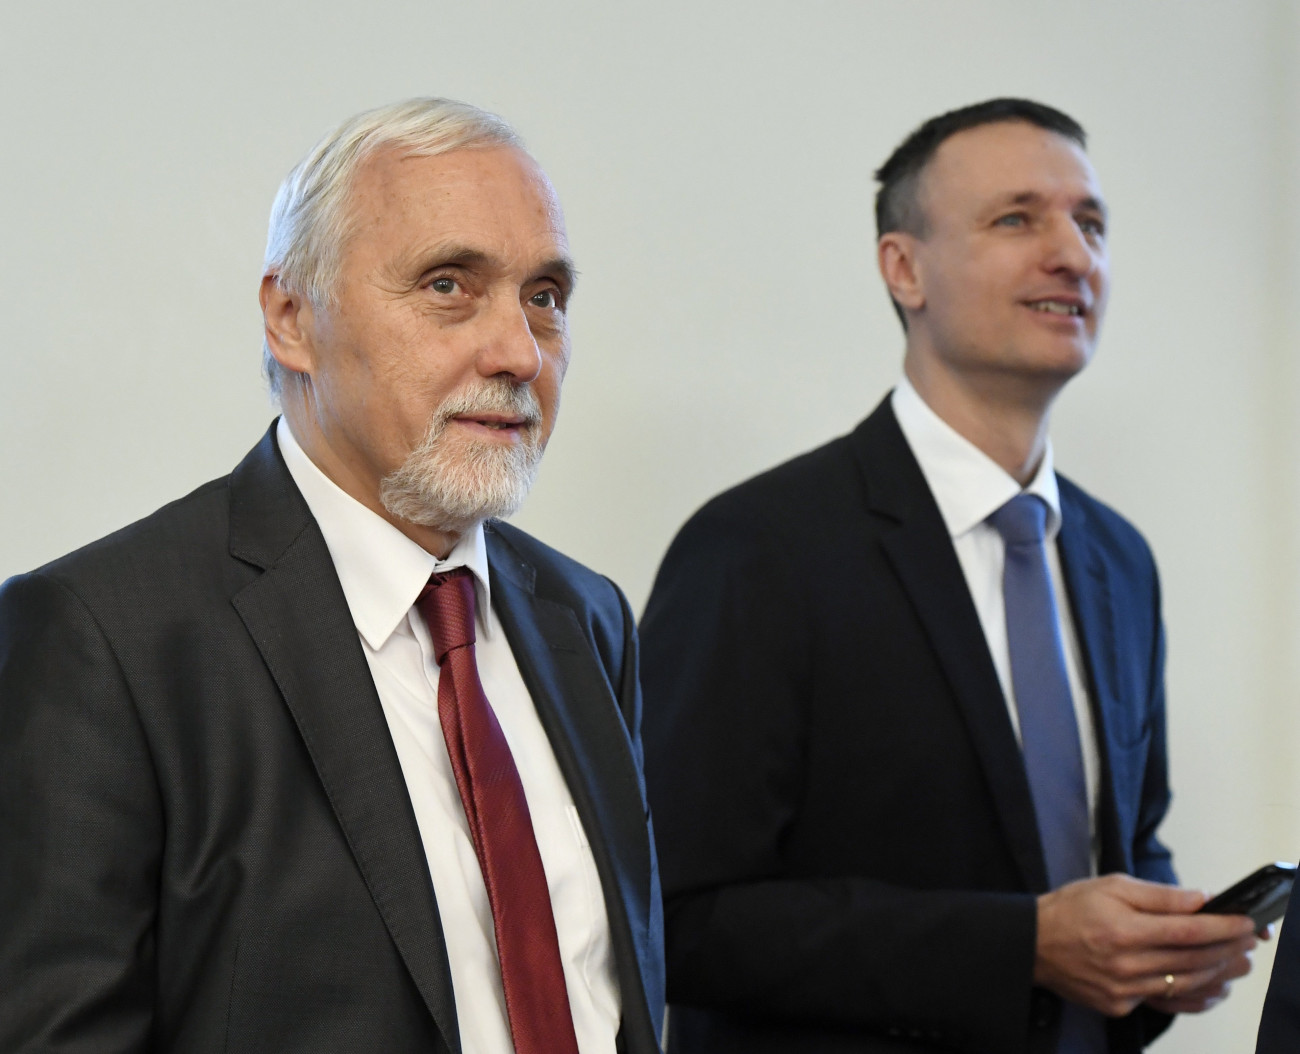 Nemesdy Ervin, a Budapesti Közlekedési Központ (BKK) új vezérigazgatója (b) és Dabóczi Kálmán, az előző vezérigazgató a Fővárosi Közgyűlés ülésén a Városházán 2019. január 23-án. A közgyűlés ezen a napon megszavazta, hogy Nemesdy Ervin váltja Dabóczi Kálmánt a BKK élén.
MTI/Koszticsák Szilárd